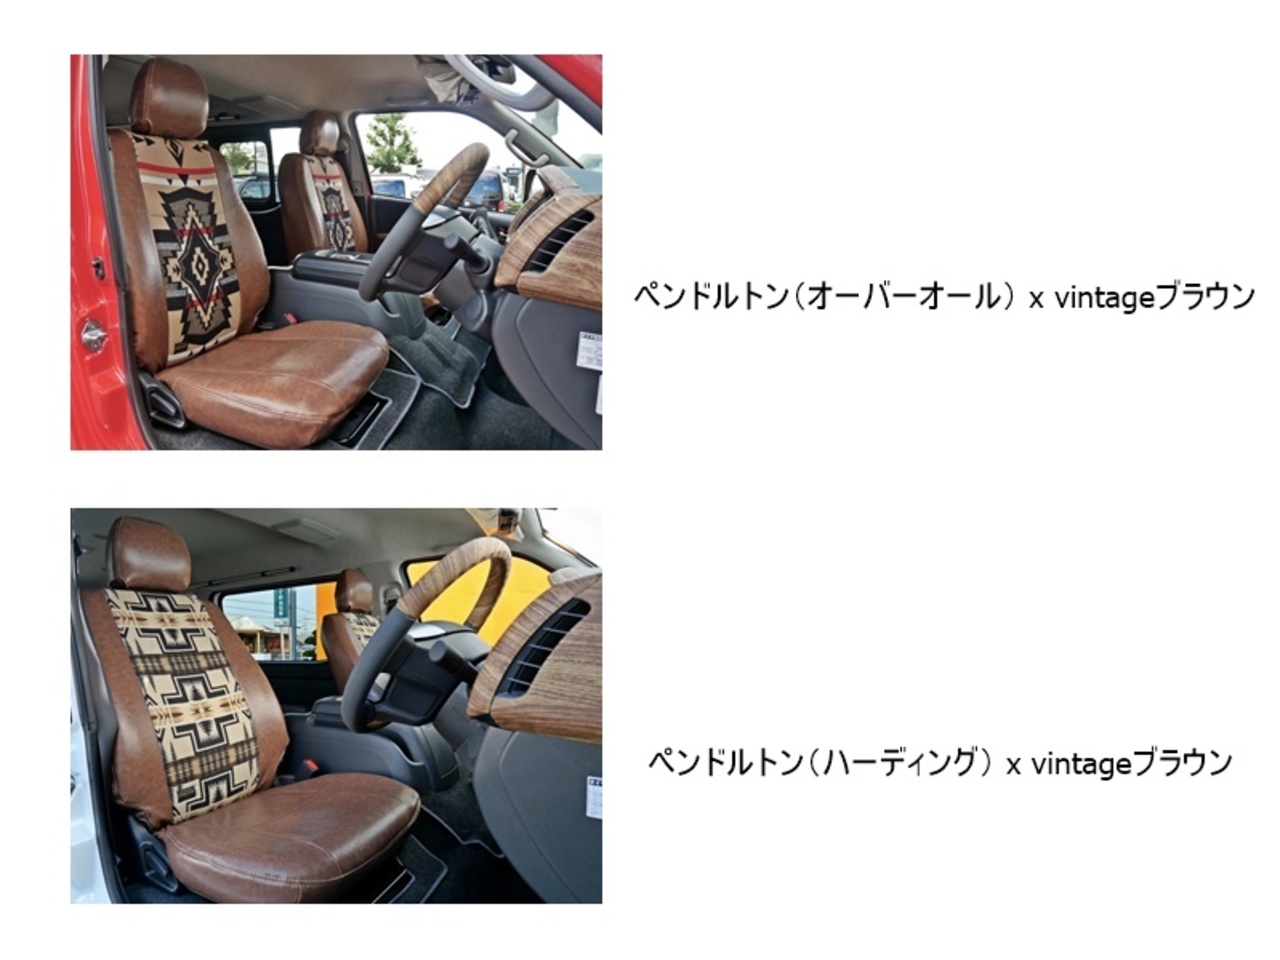 ハイエース 車中泊仕様 二の字ベッドキット キャンピングカー【FD-BOX W09】 ヴィンテージ生地オプション+￥33,000でペンドルトン選べます